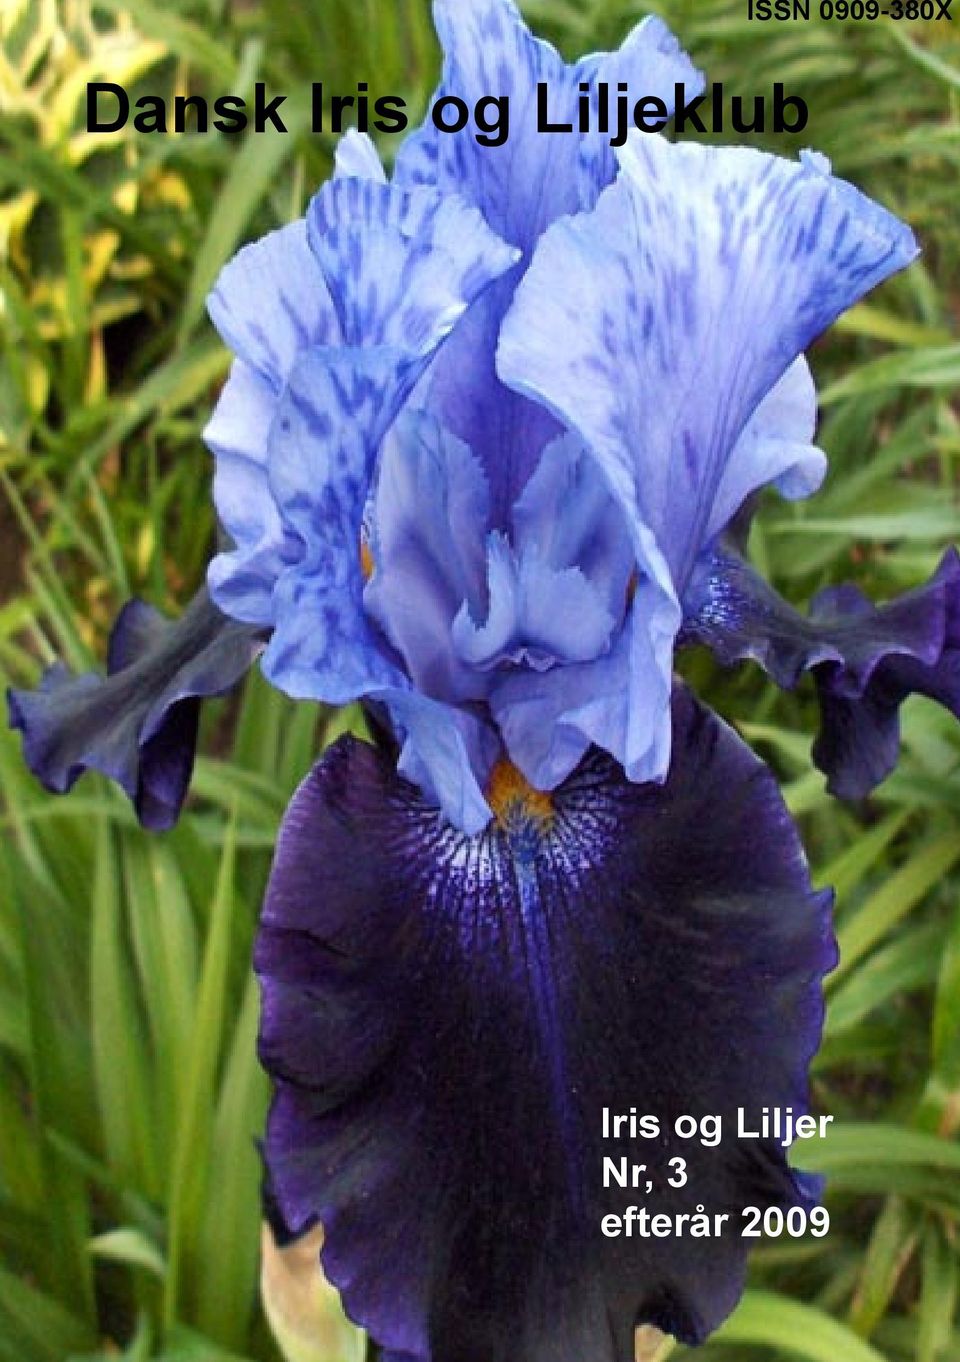 Liljeklub Iris og